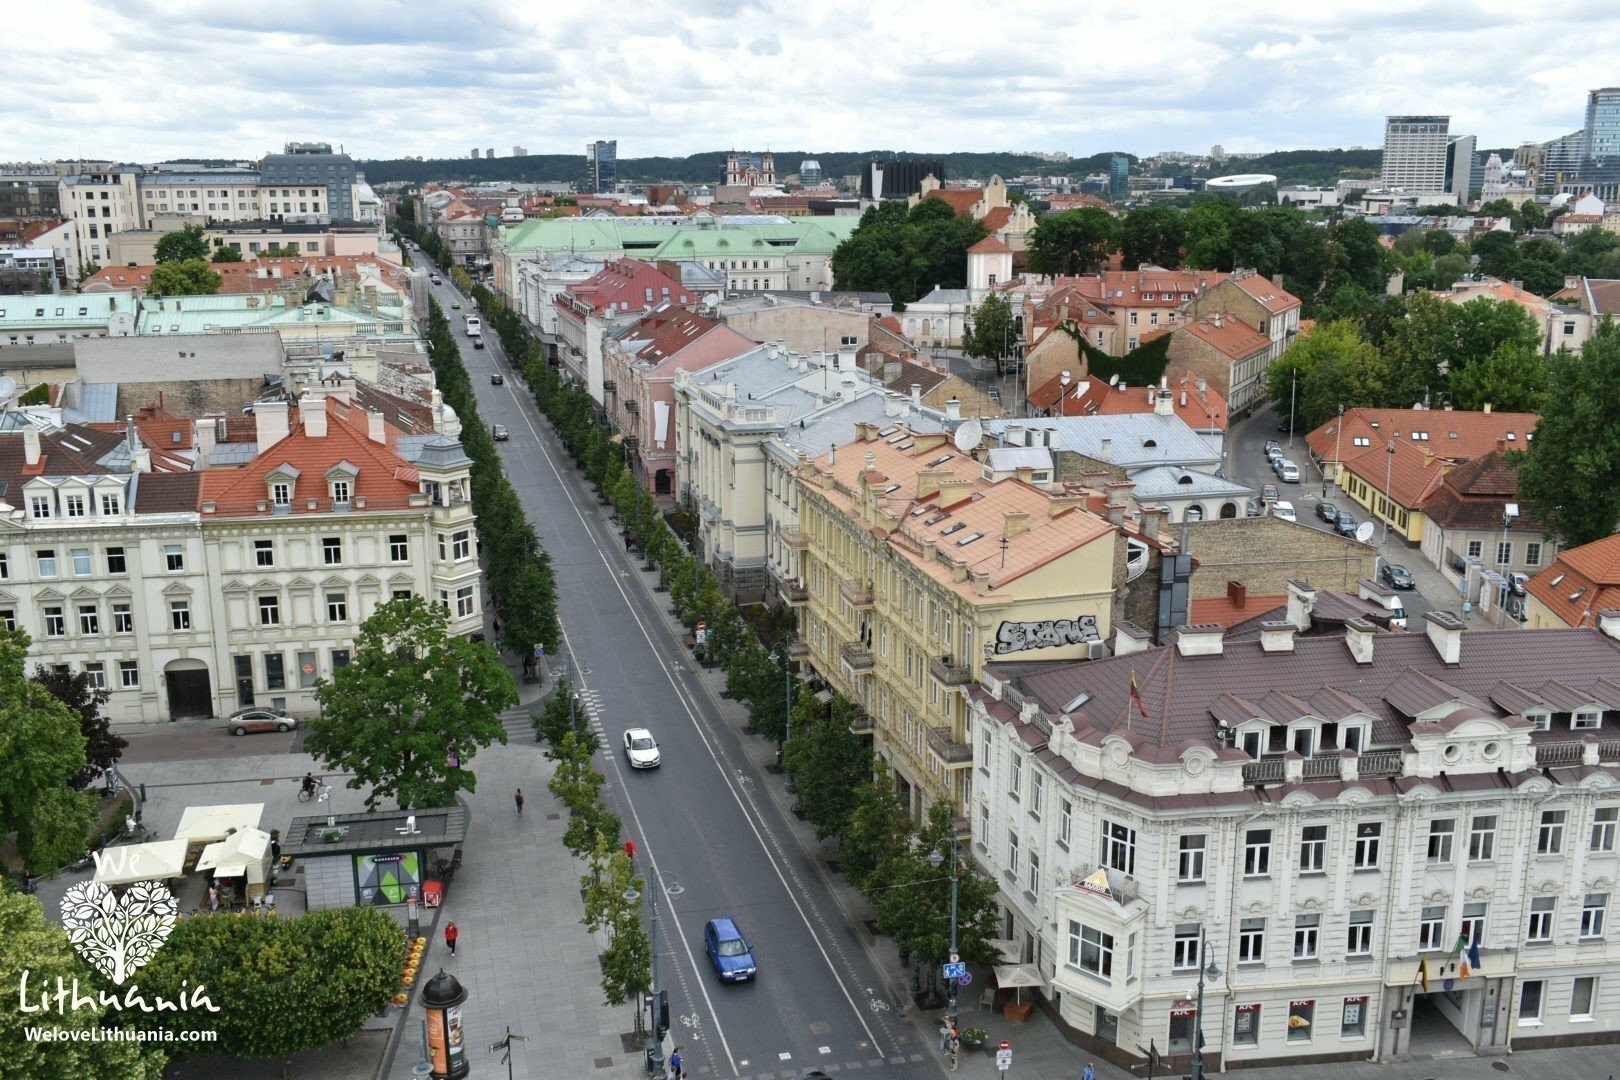 Gedimino prospektas, tai pagrindinė Vilniaus miesto gatvė. Šią panoramą galima pamatyti iš katedros varpinės.